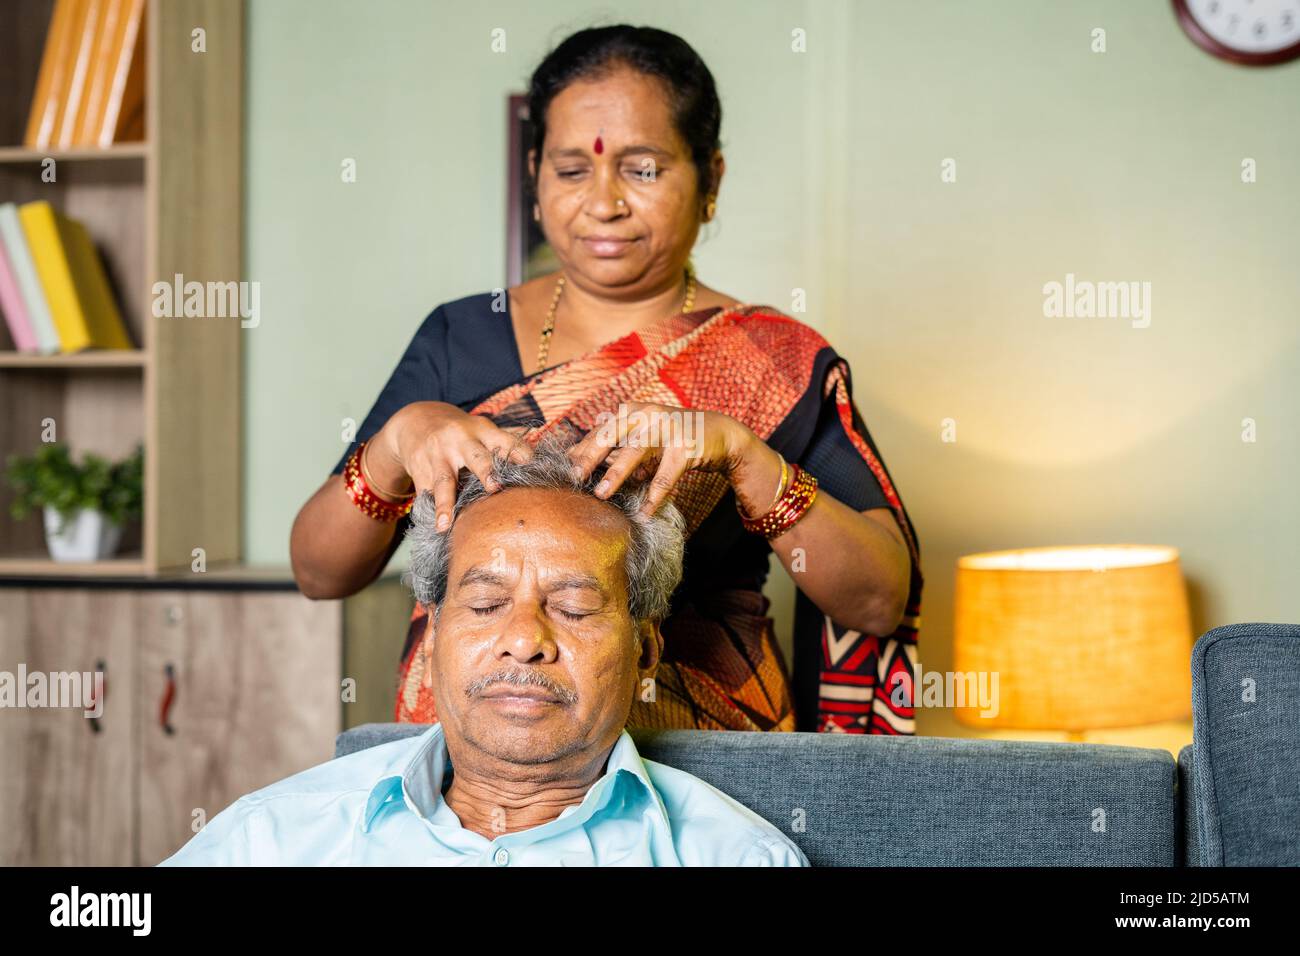 Frau massiert den Kopf eines entspannten Mannes zu Hause, während sie auf dem Sofa sitzt - Konzept der Familie, des älteren Paares und des Bonding. Stockfoto